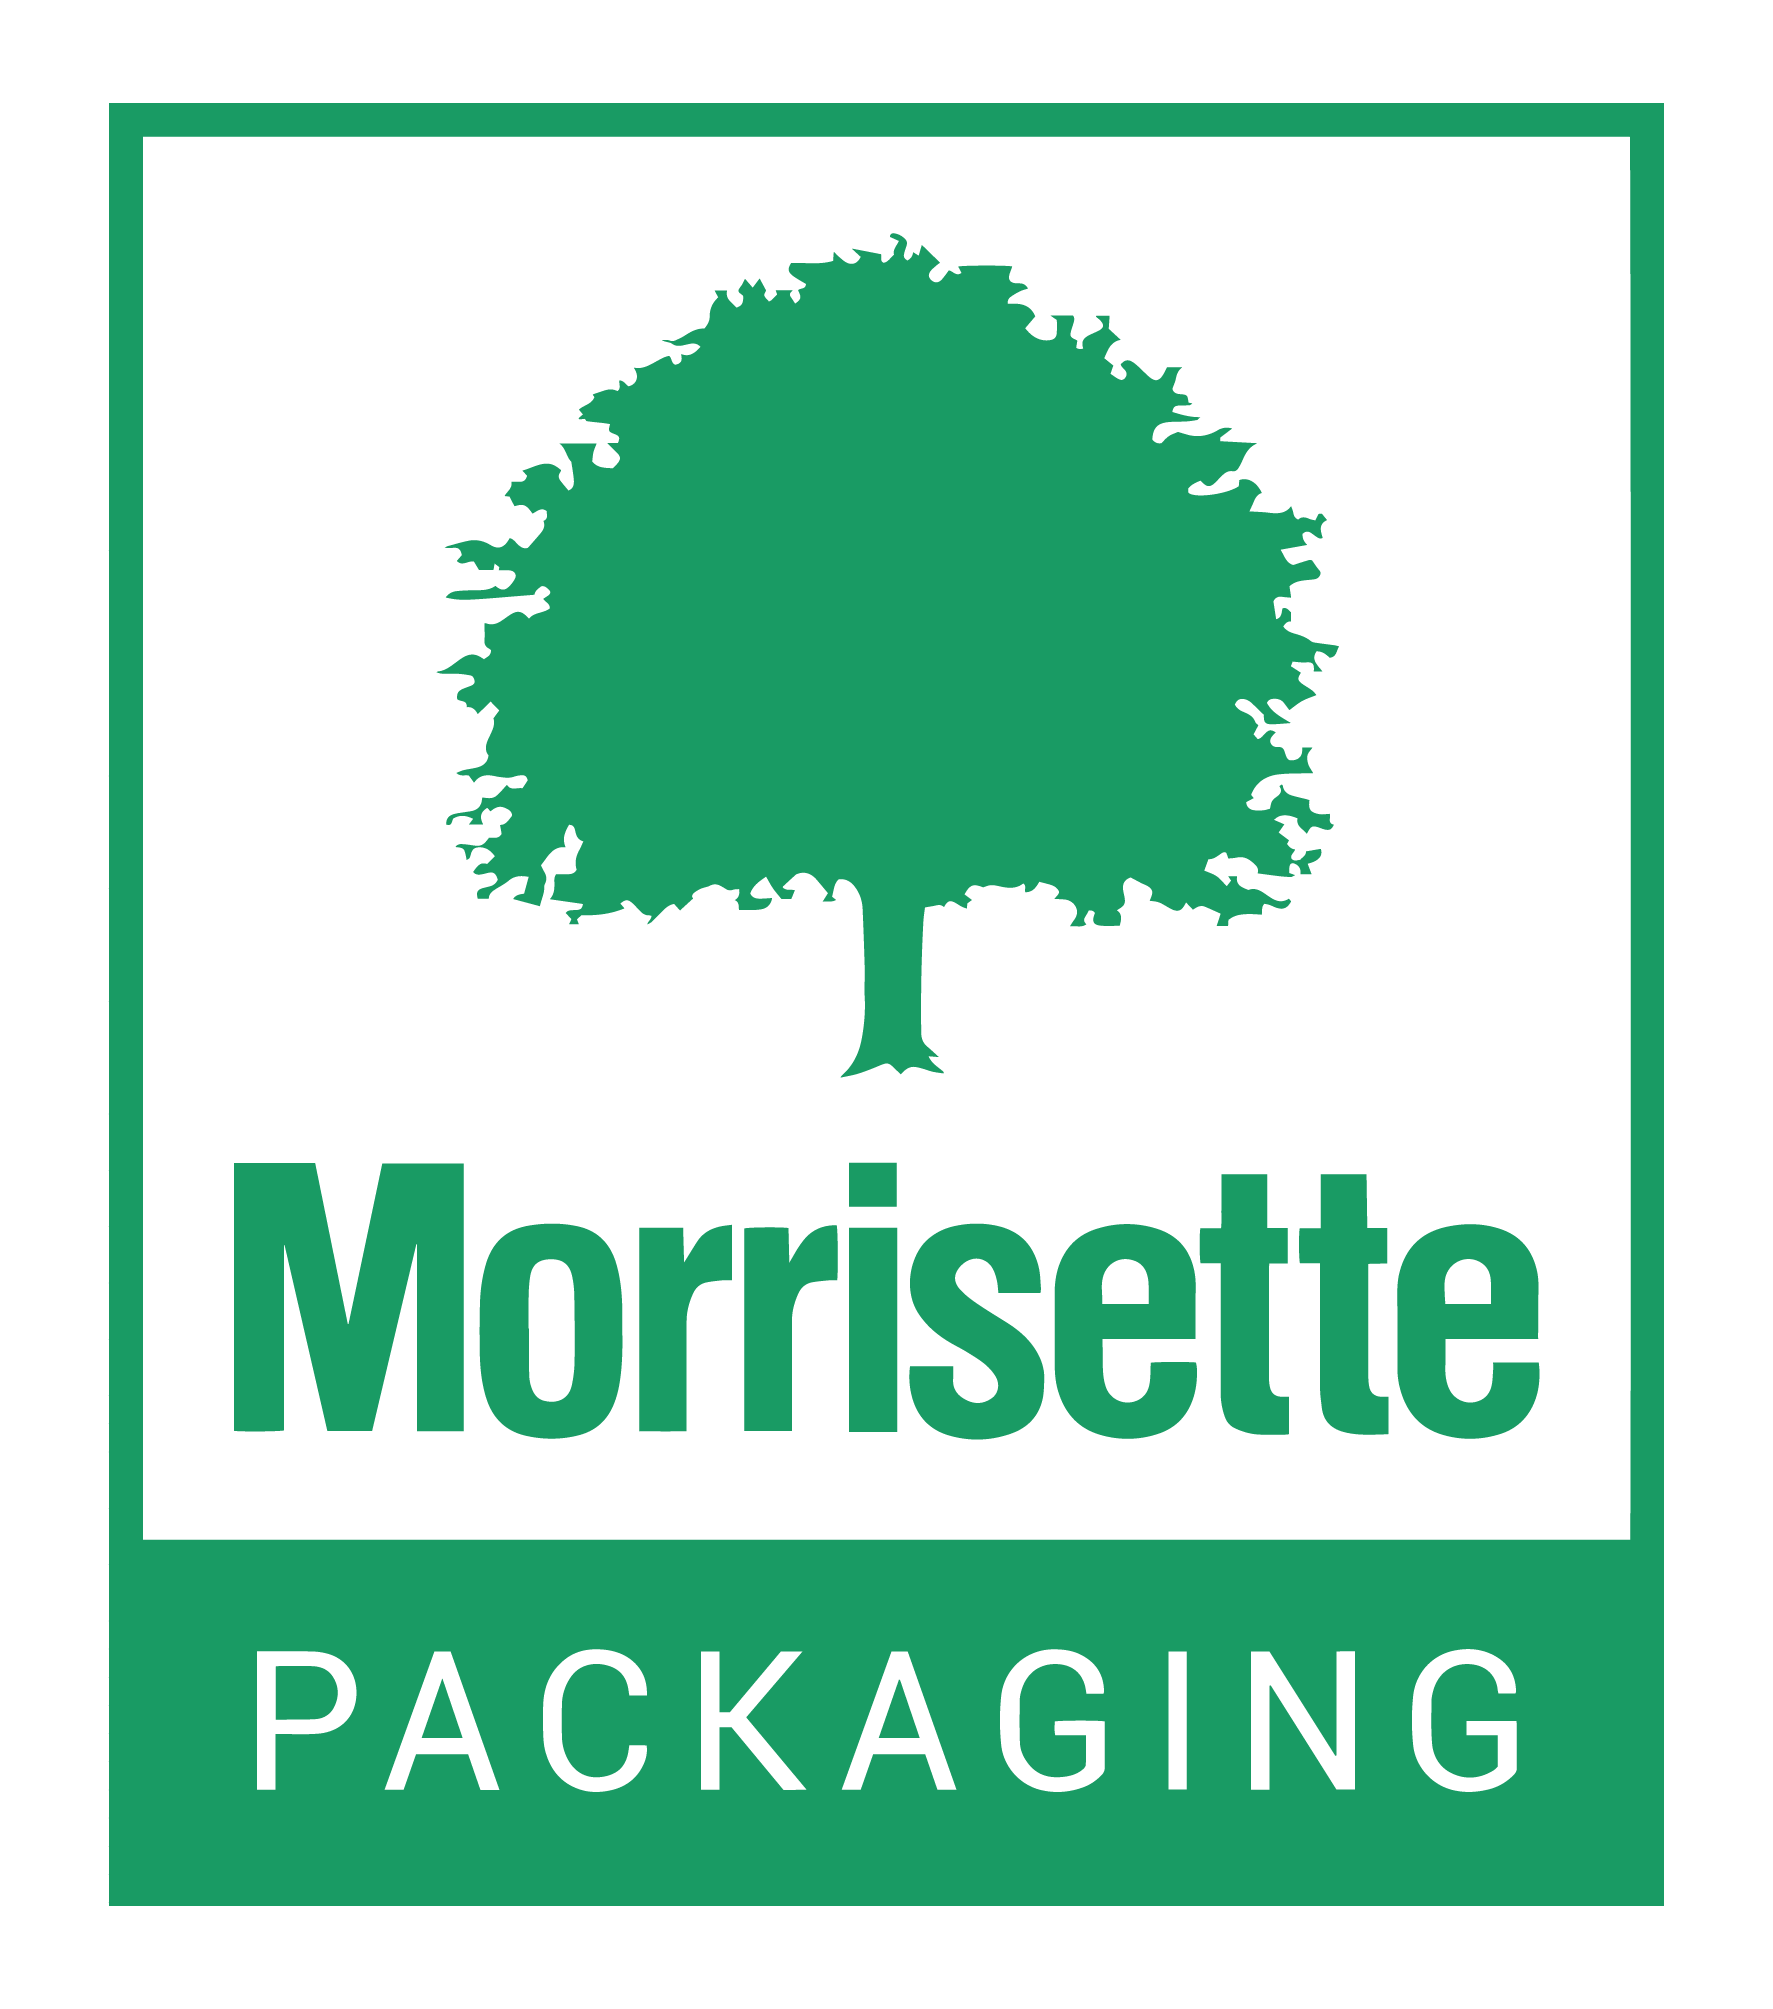 Morrisette Packaging